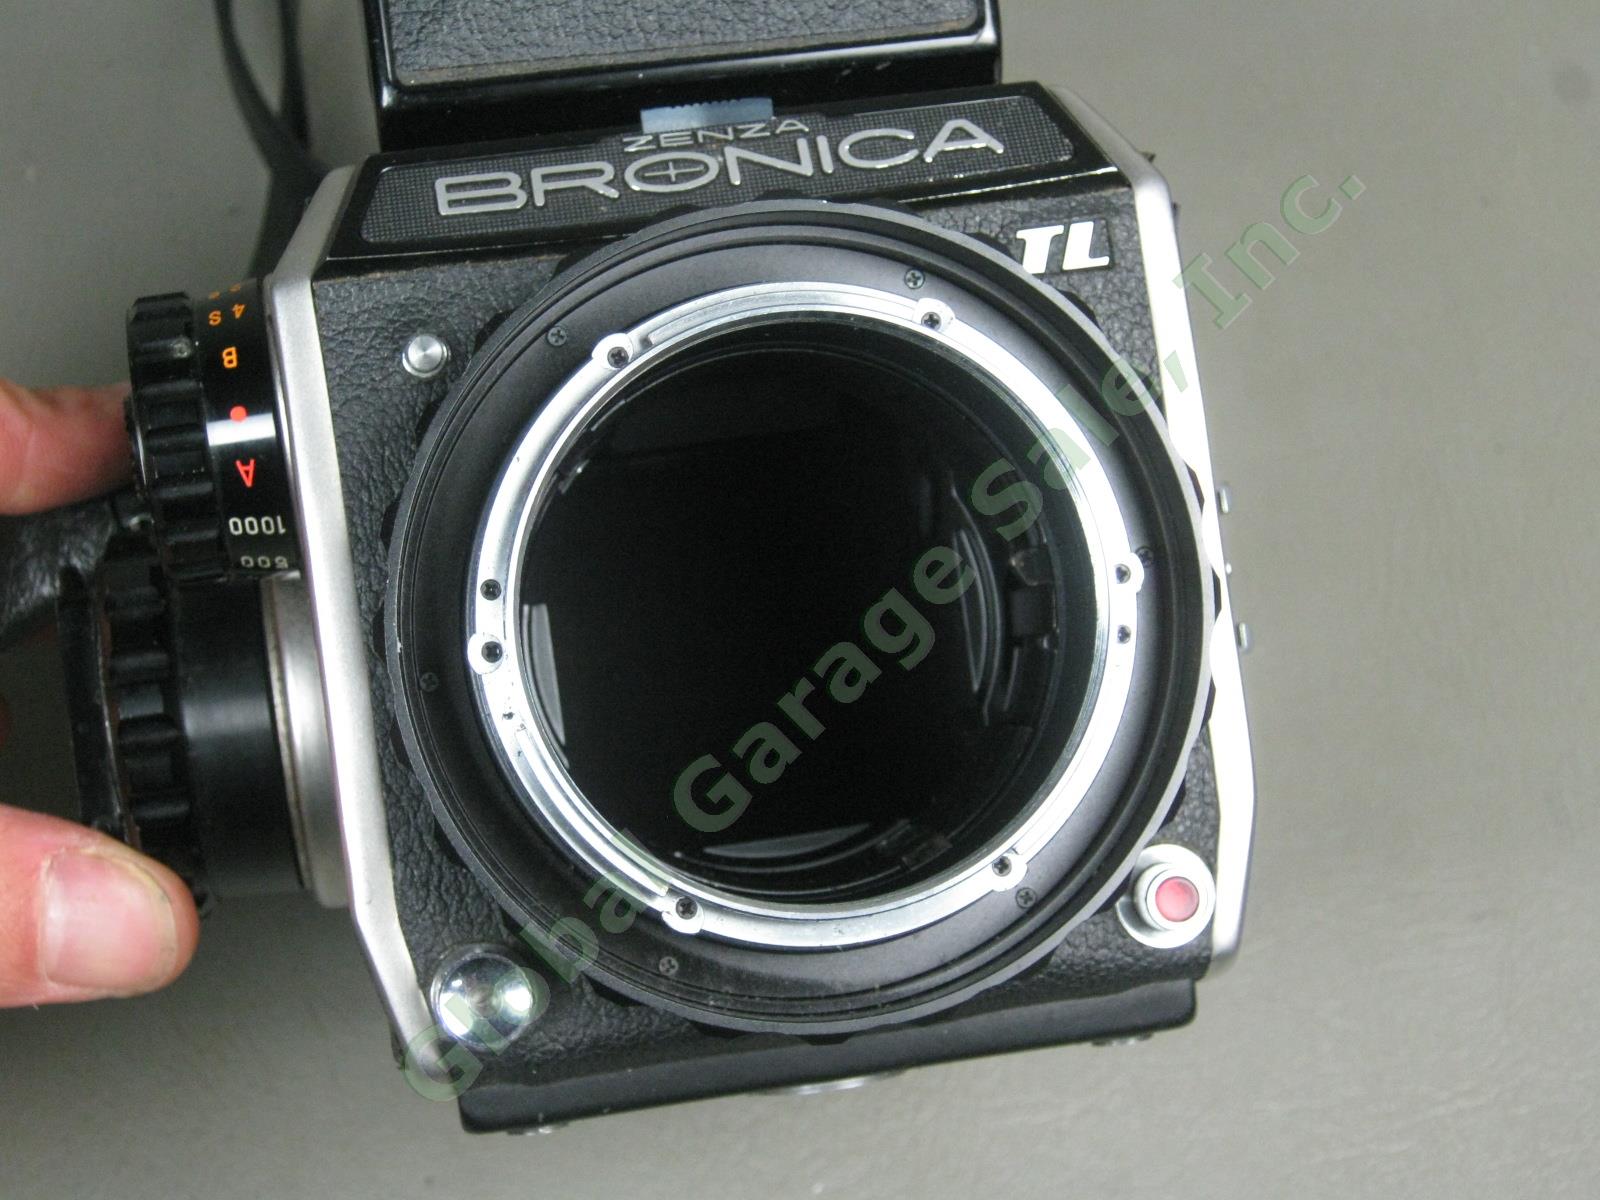 Zenza Bronica EC-TL Camera Nippon Kogaku Nikkor-H 50mm 1:3.5 f/3.5 Lens Bundle 9